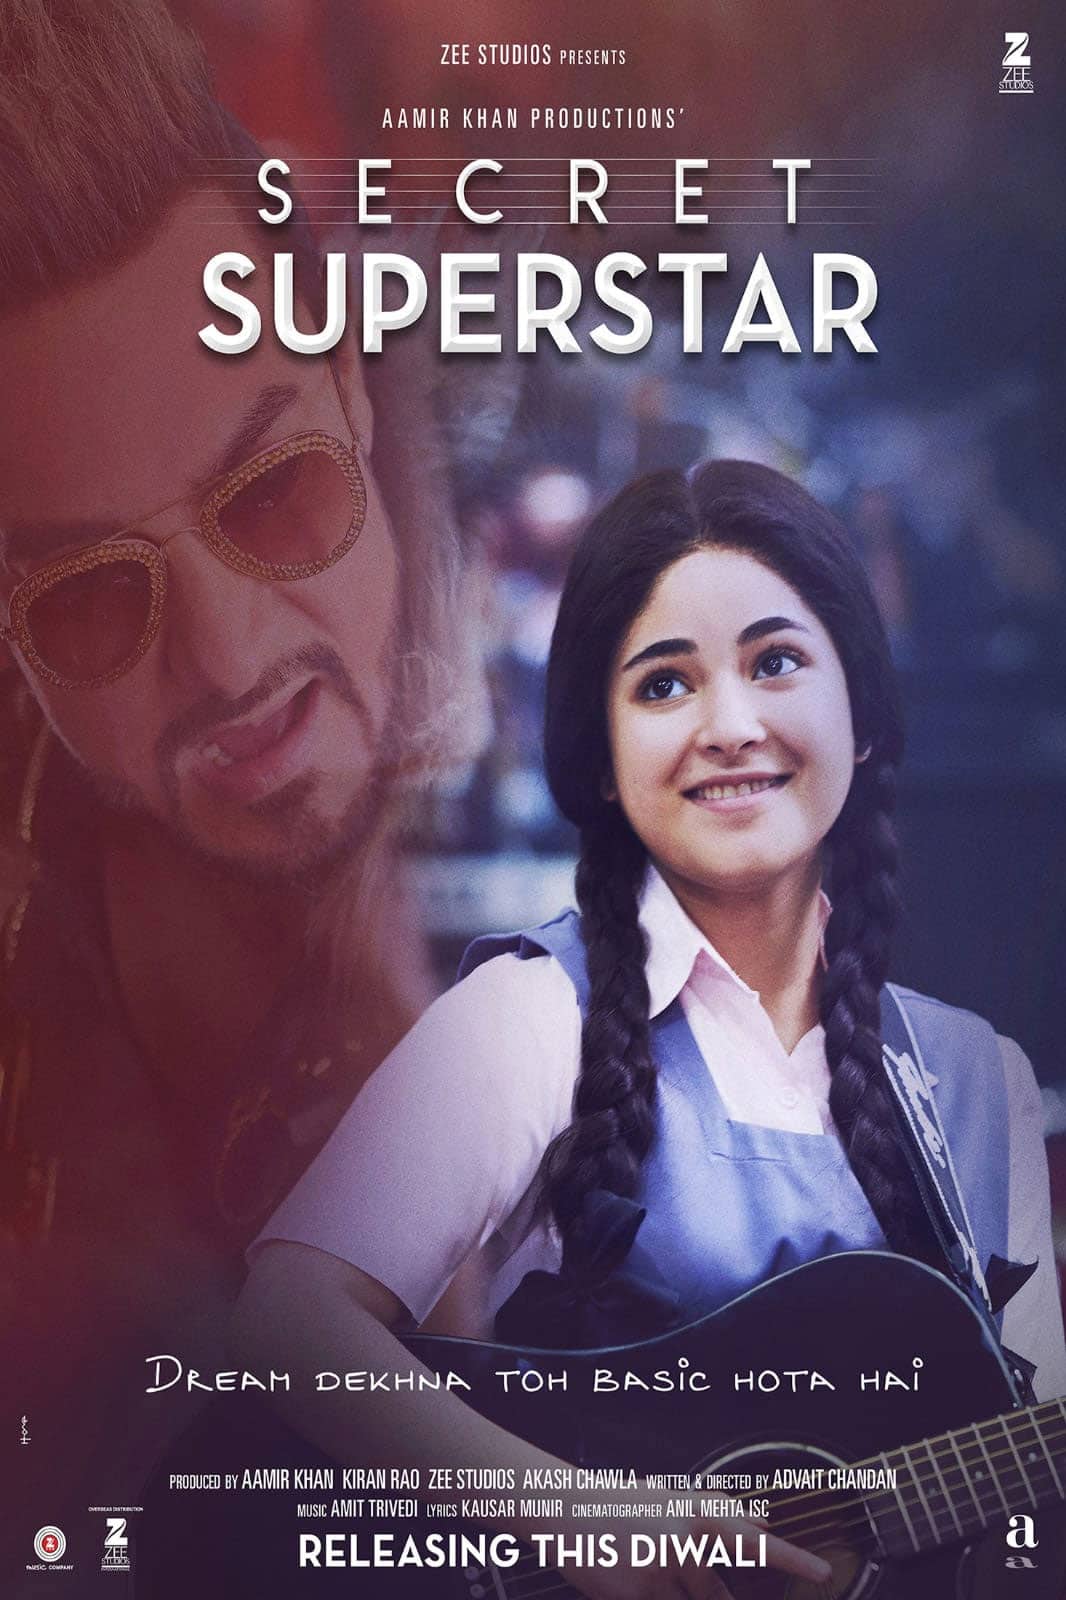 Aamir Khan and Zaira Wasim's Secret Superstar